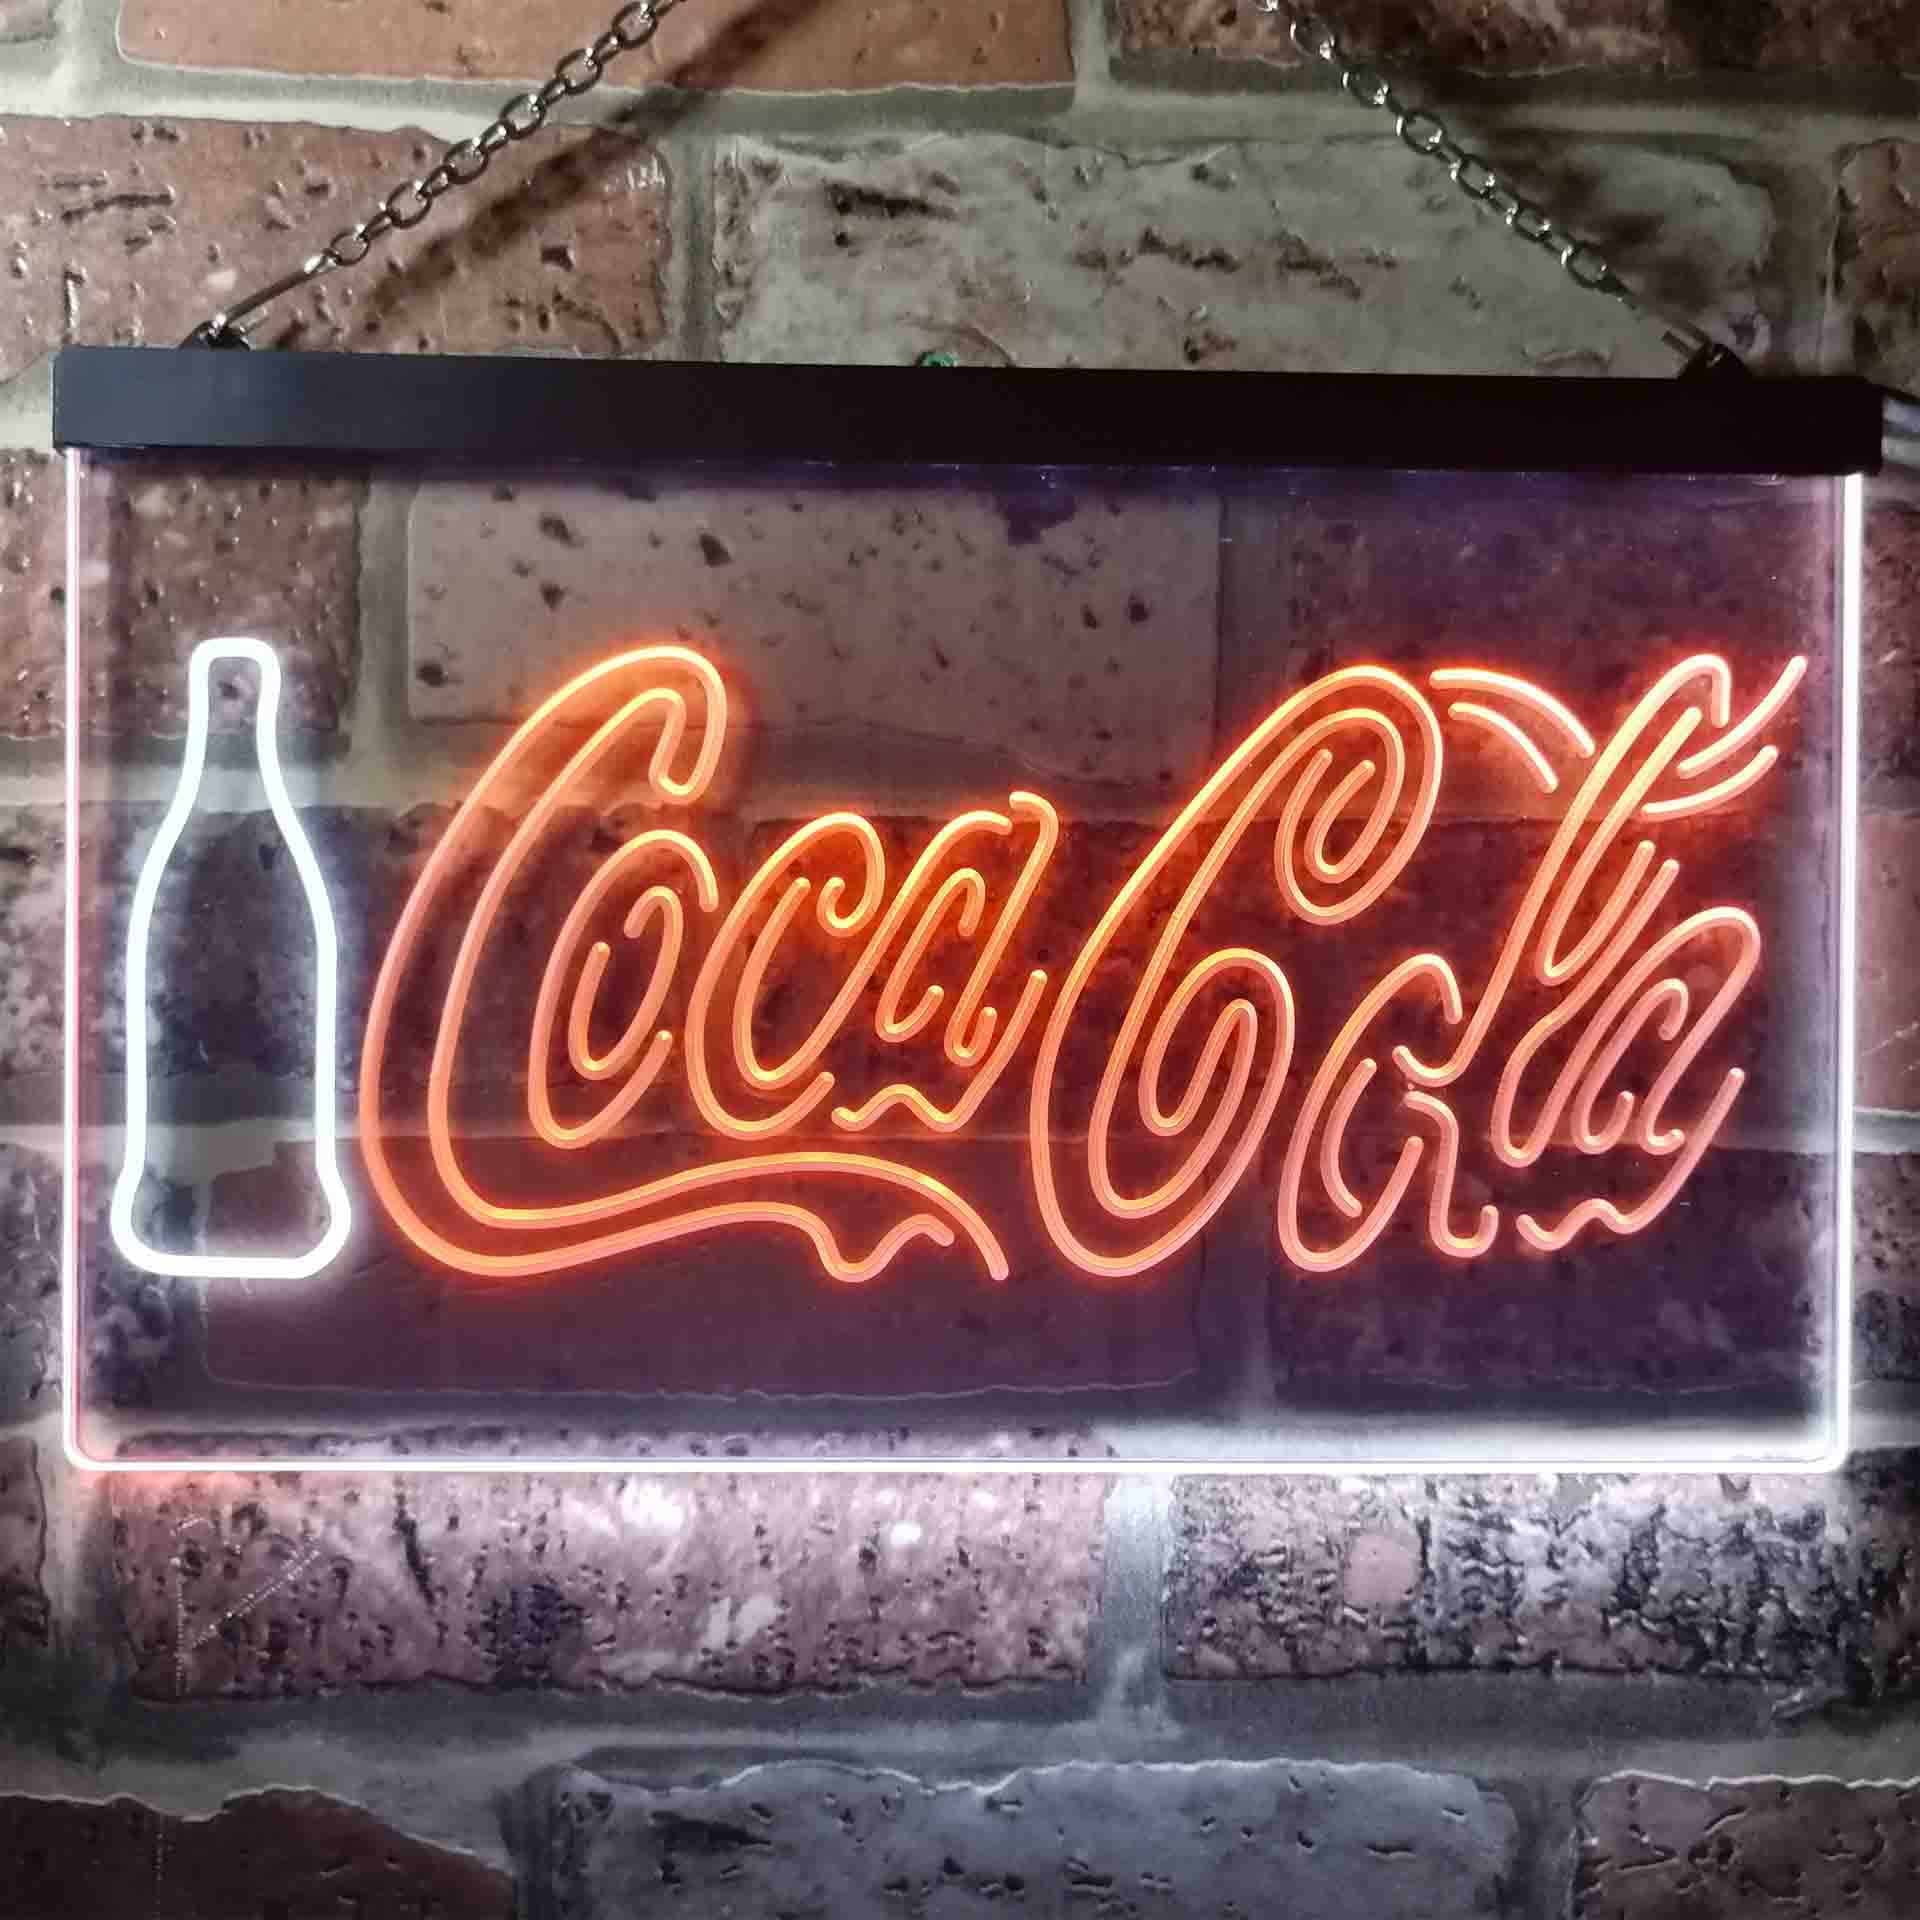 コカ・コーラボトルディスプレイバーマンケーブLedネオンライトデコレーションギフトネオンLEDサイン